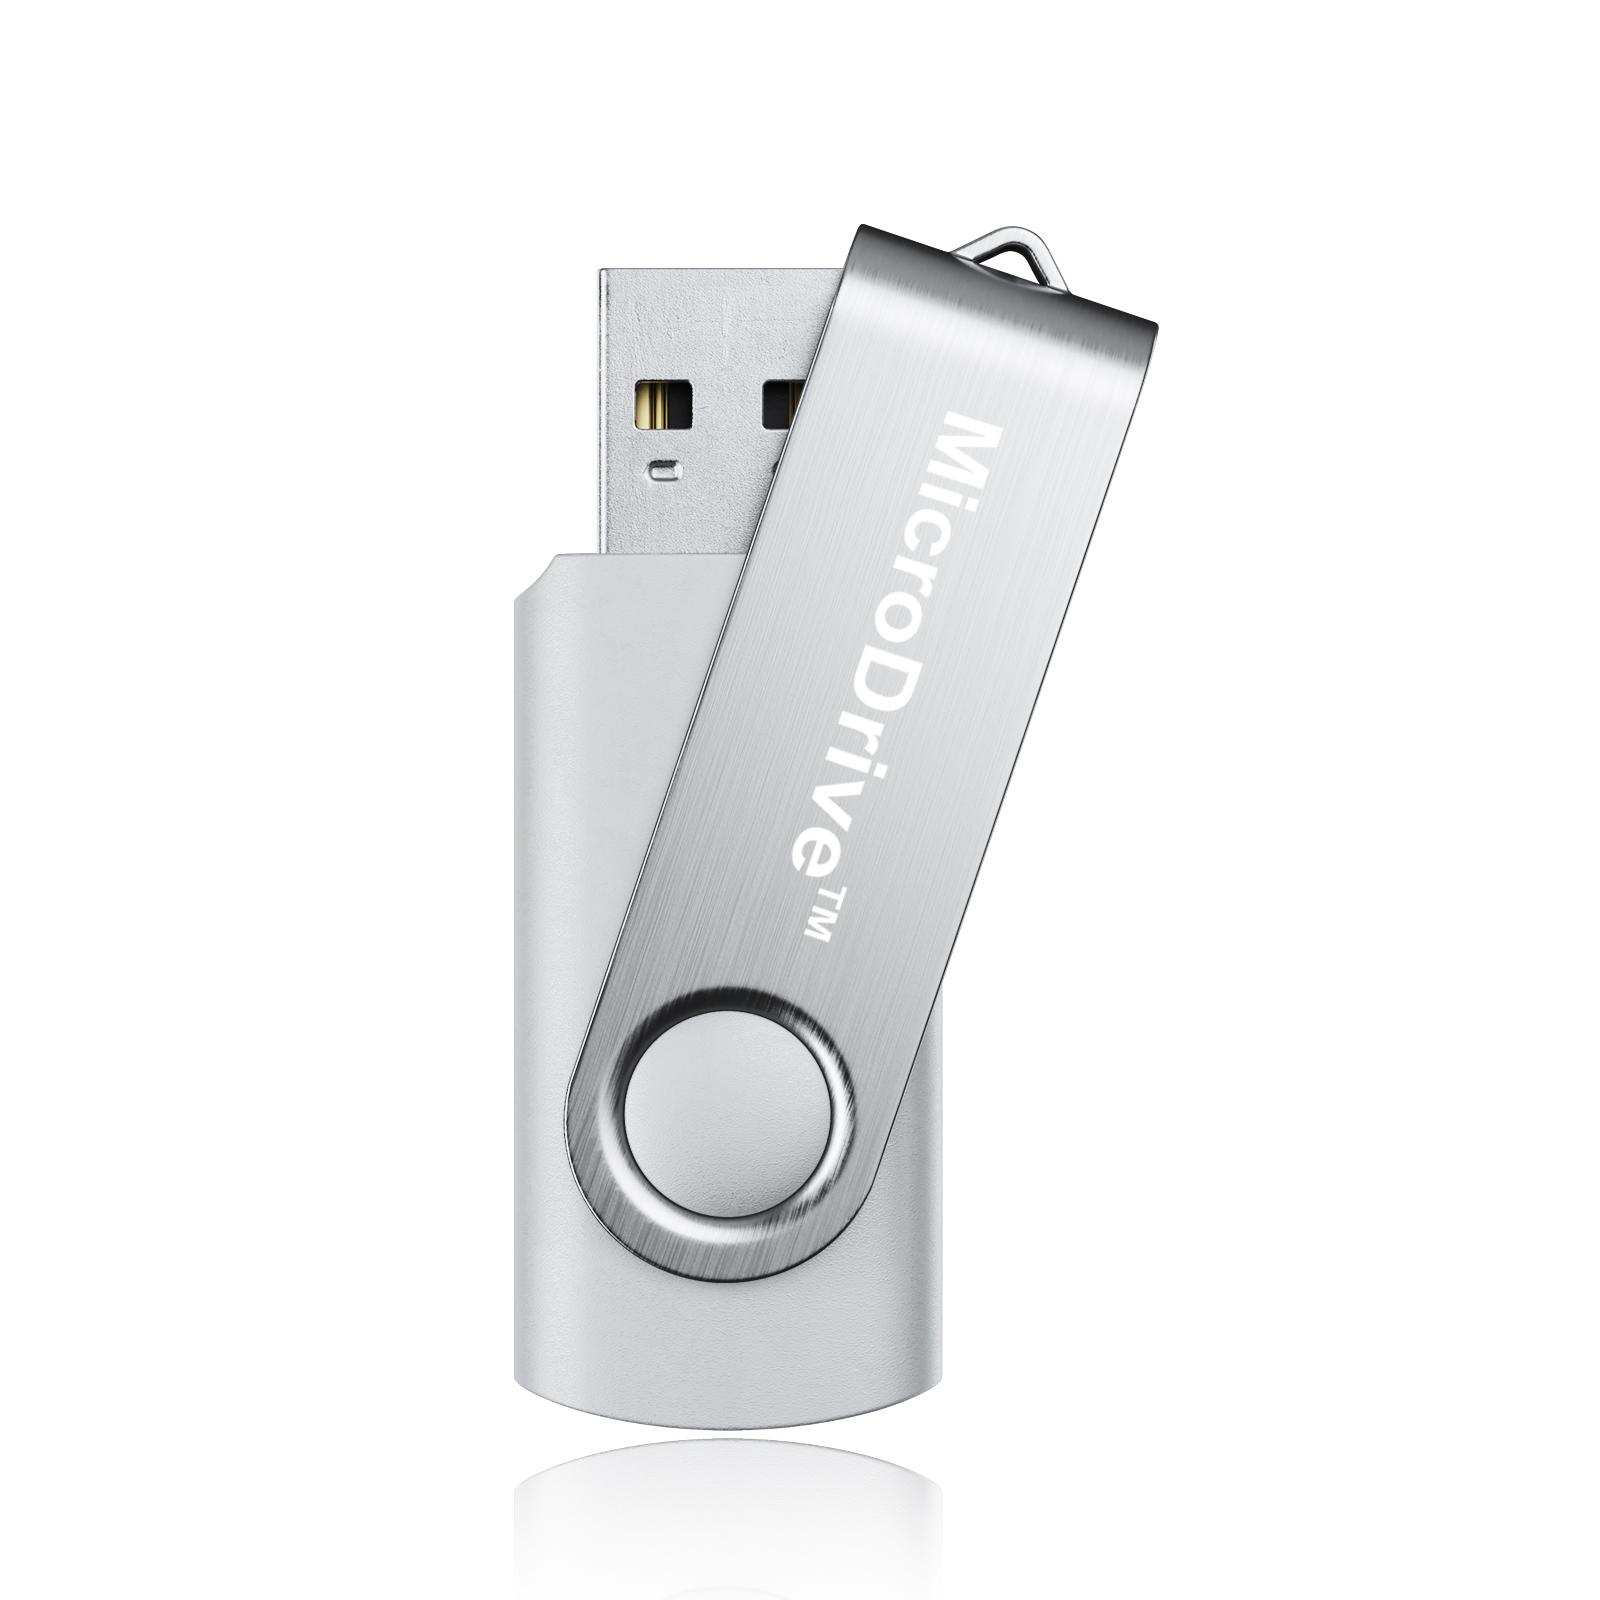 USB Stick Speicherstick Memorystick USB Speicher 4GB 8GB 16GB 32GB 64GB 128GB